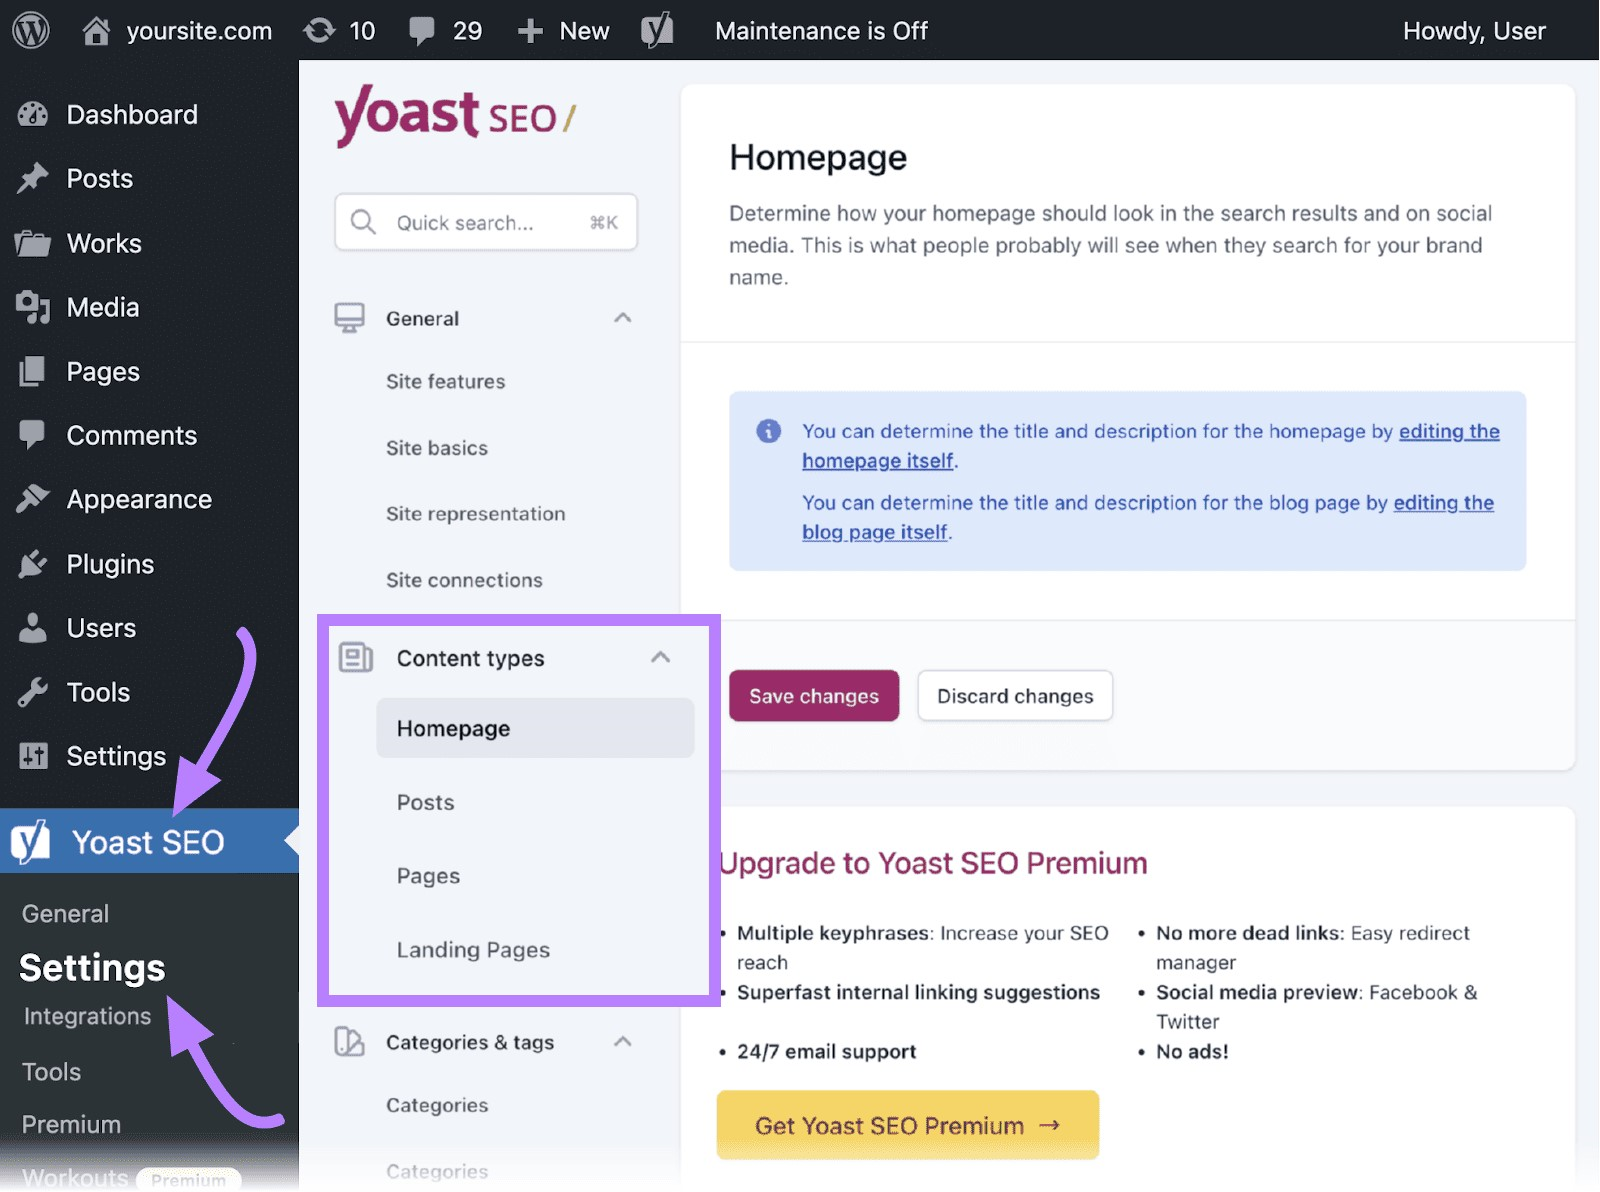 Yoast SEO homepage